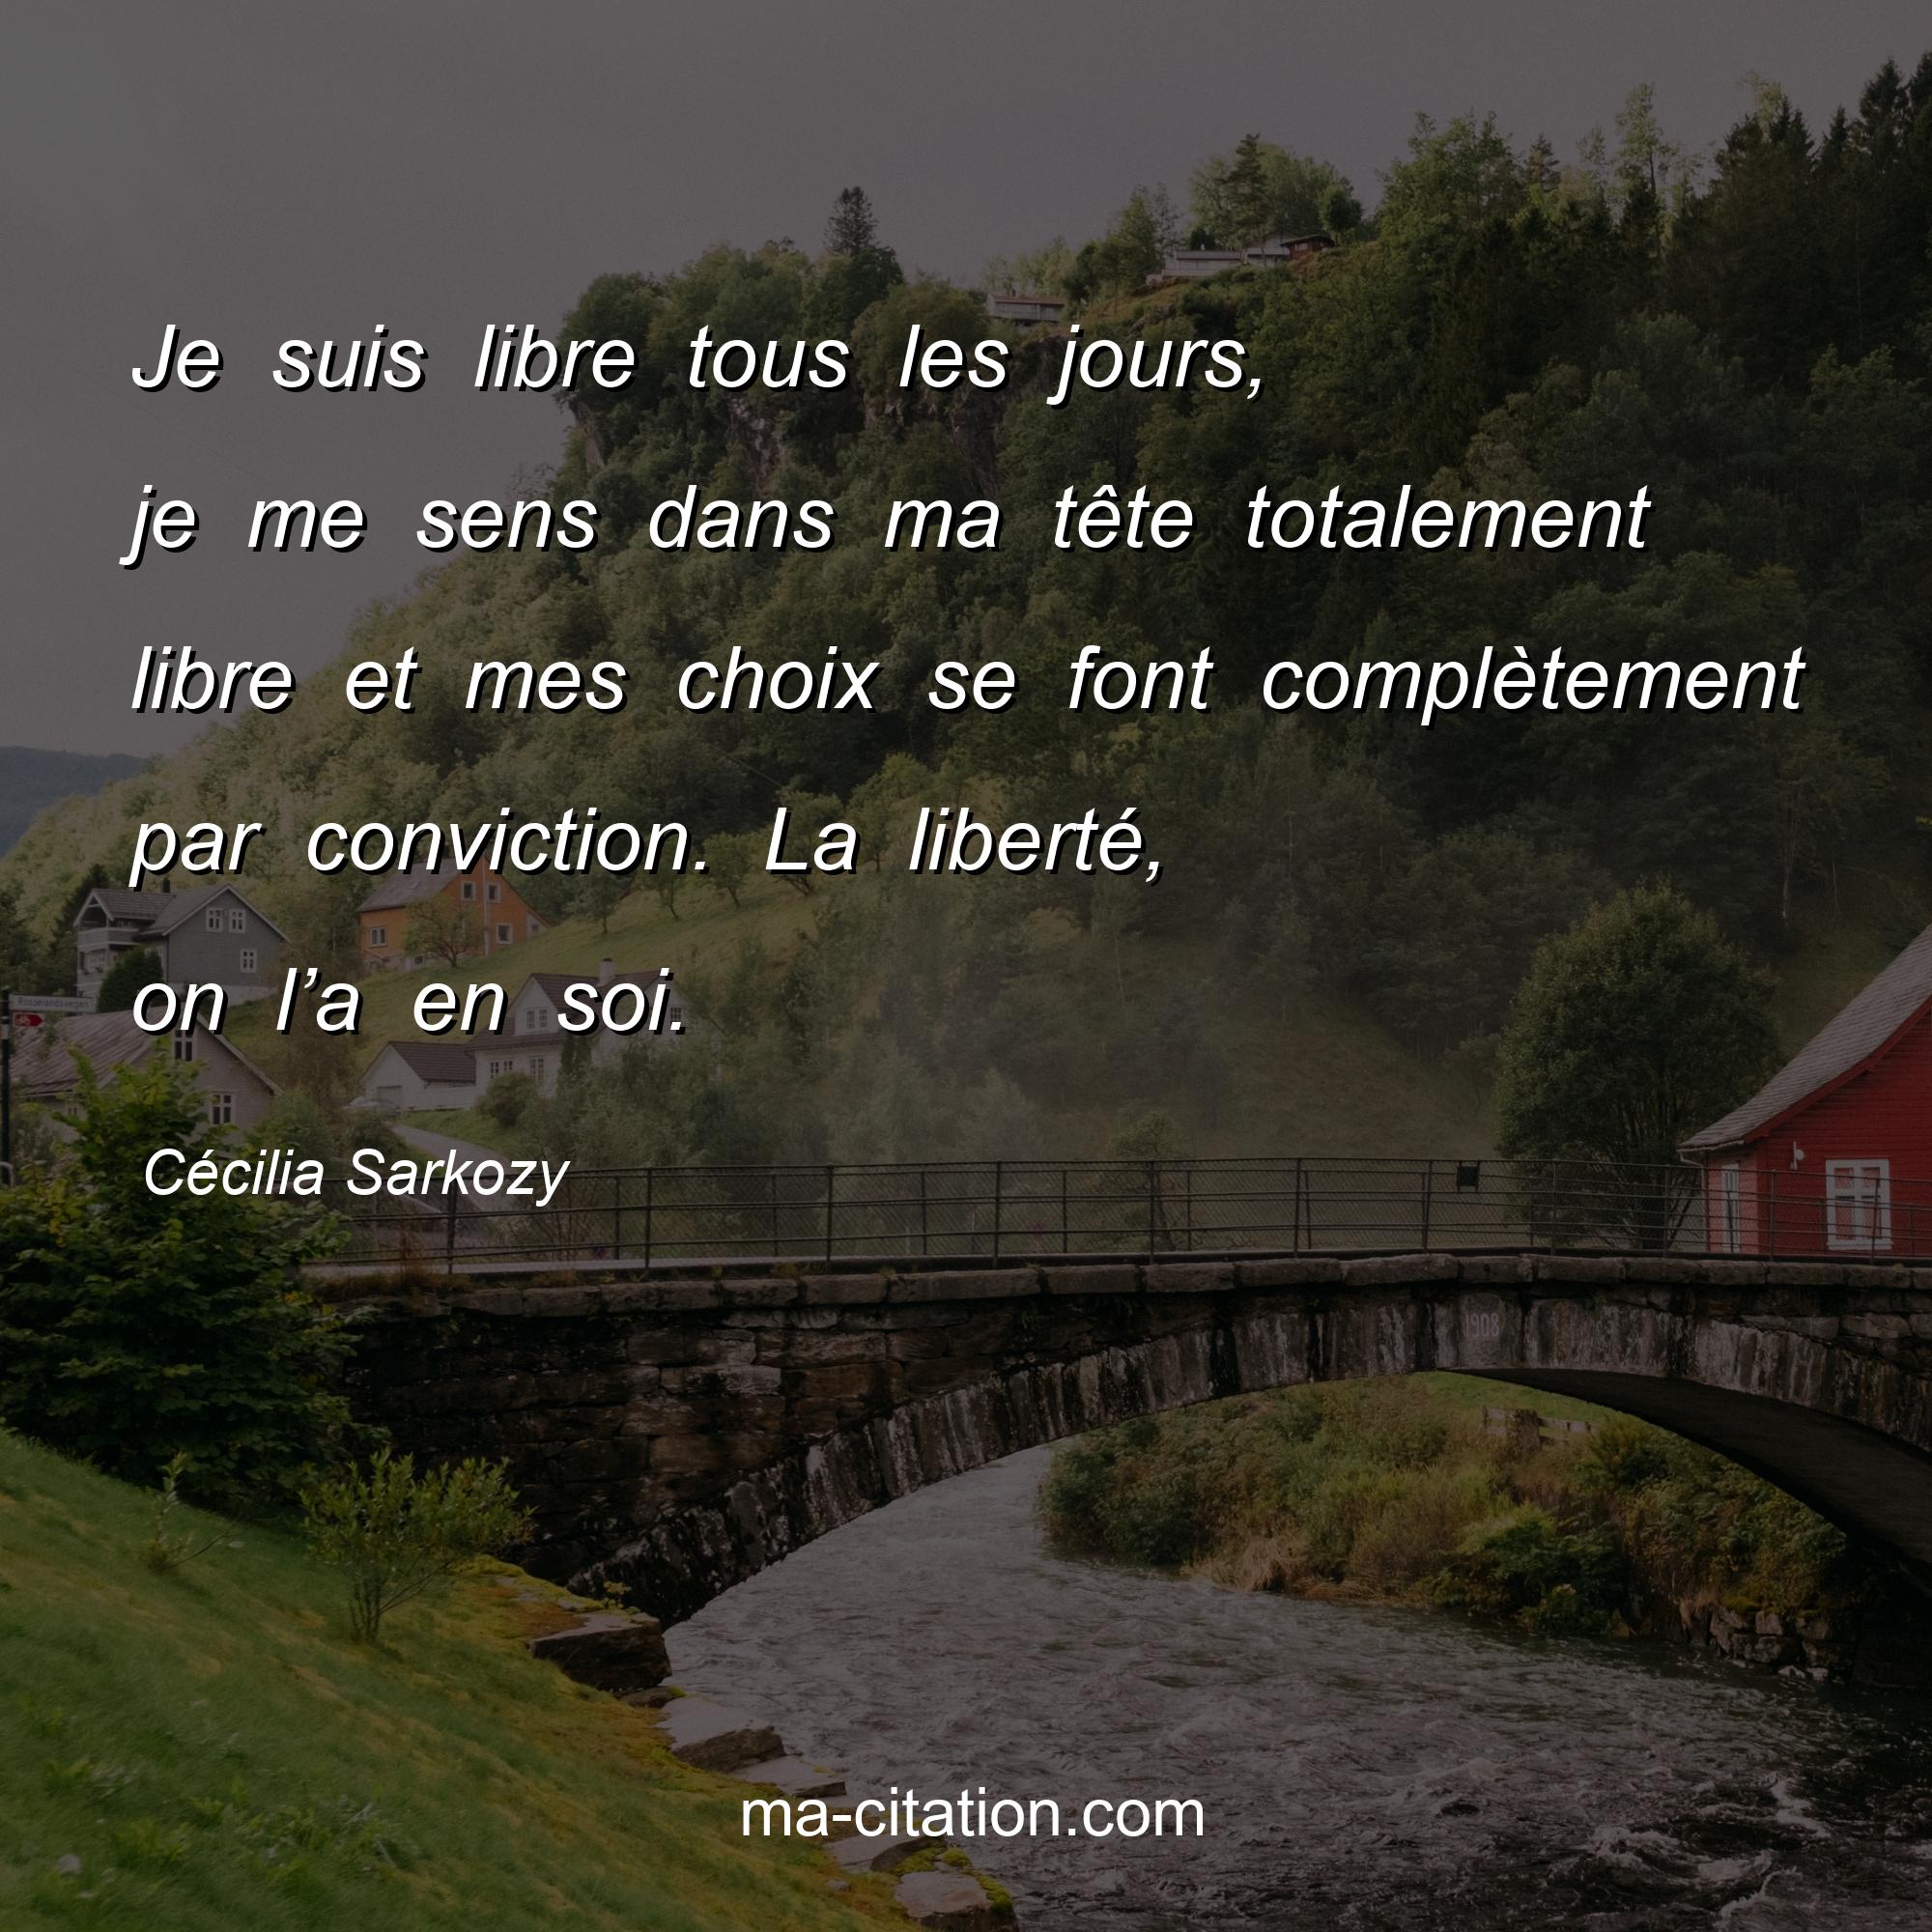 Cécilia Sarkozy : Je suis libre tous les jours, je me sens dans ma tête totalement libre et mes choix se font complètement par conviction. La liberté, on l’a en soi.